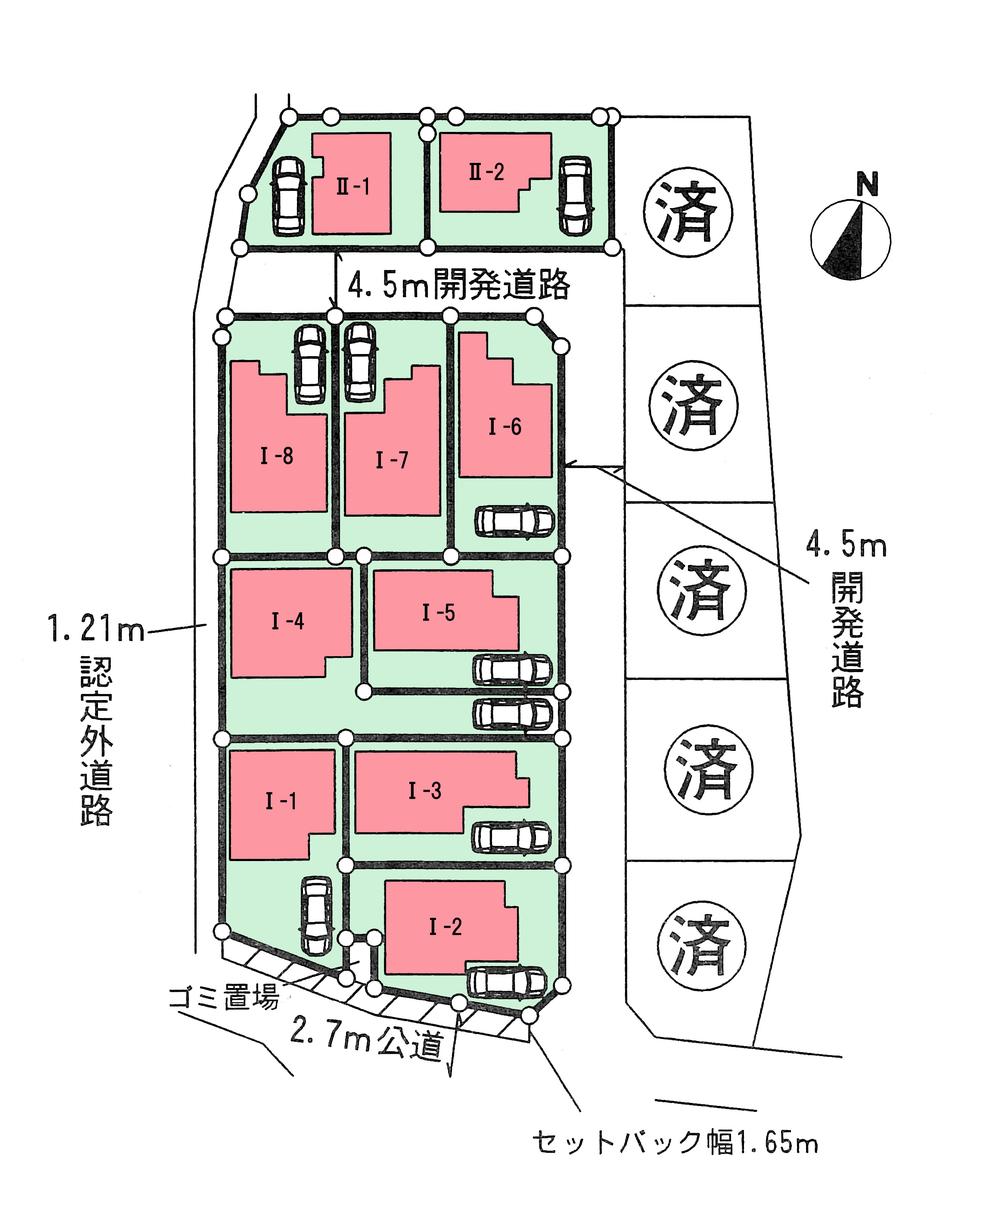 Compartment figure. 30,800,000 yen, 4LDK, Land area 128.88 sq m , Building area 102.67 sq m